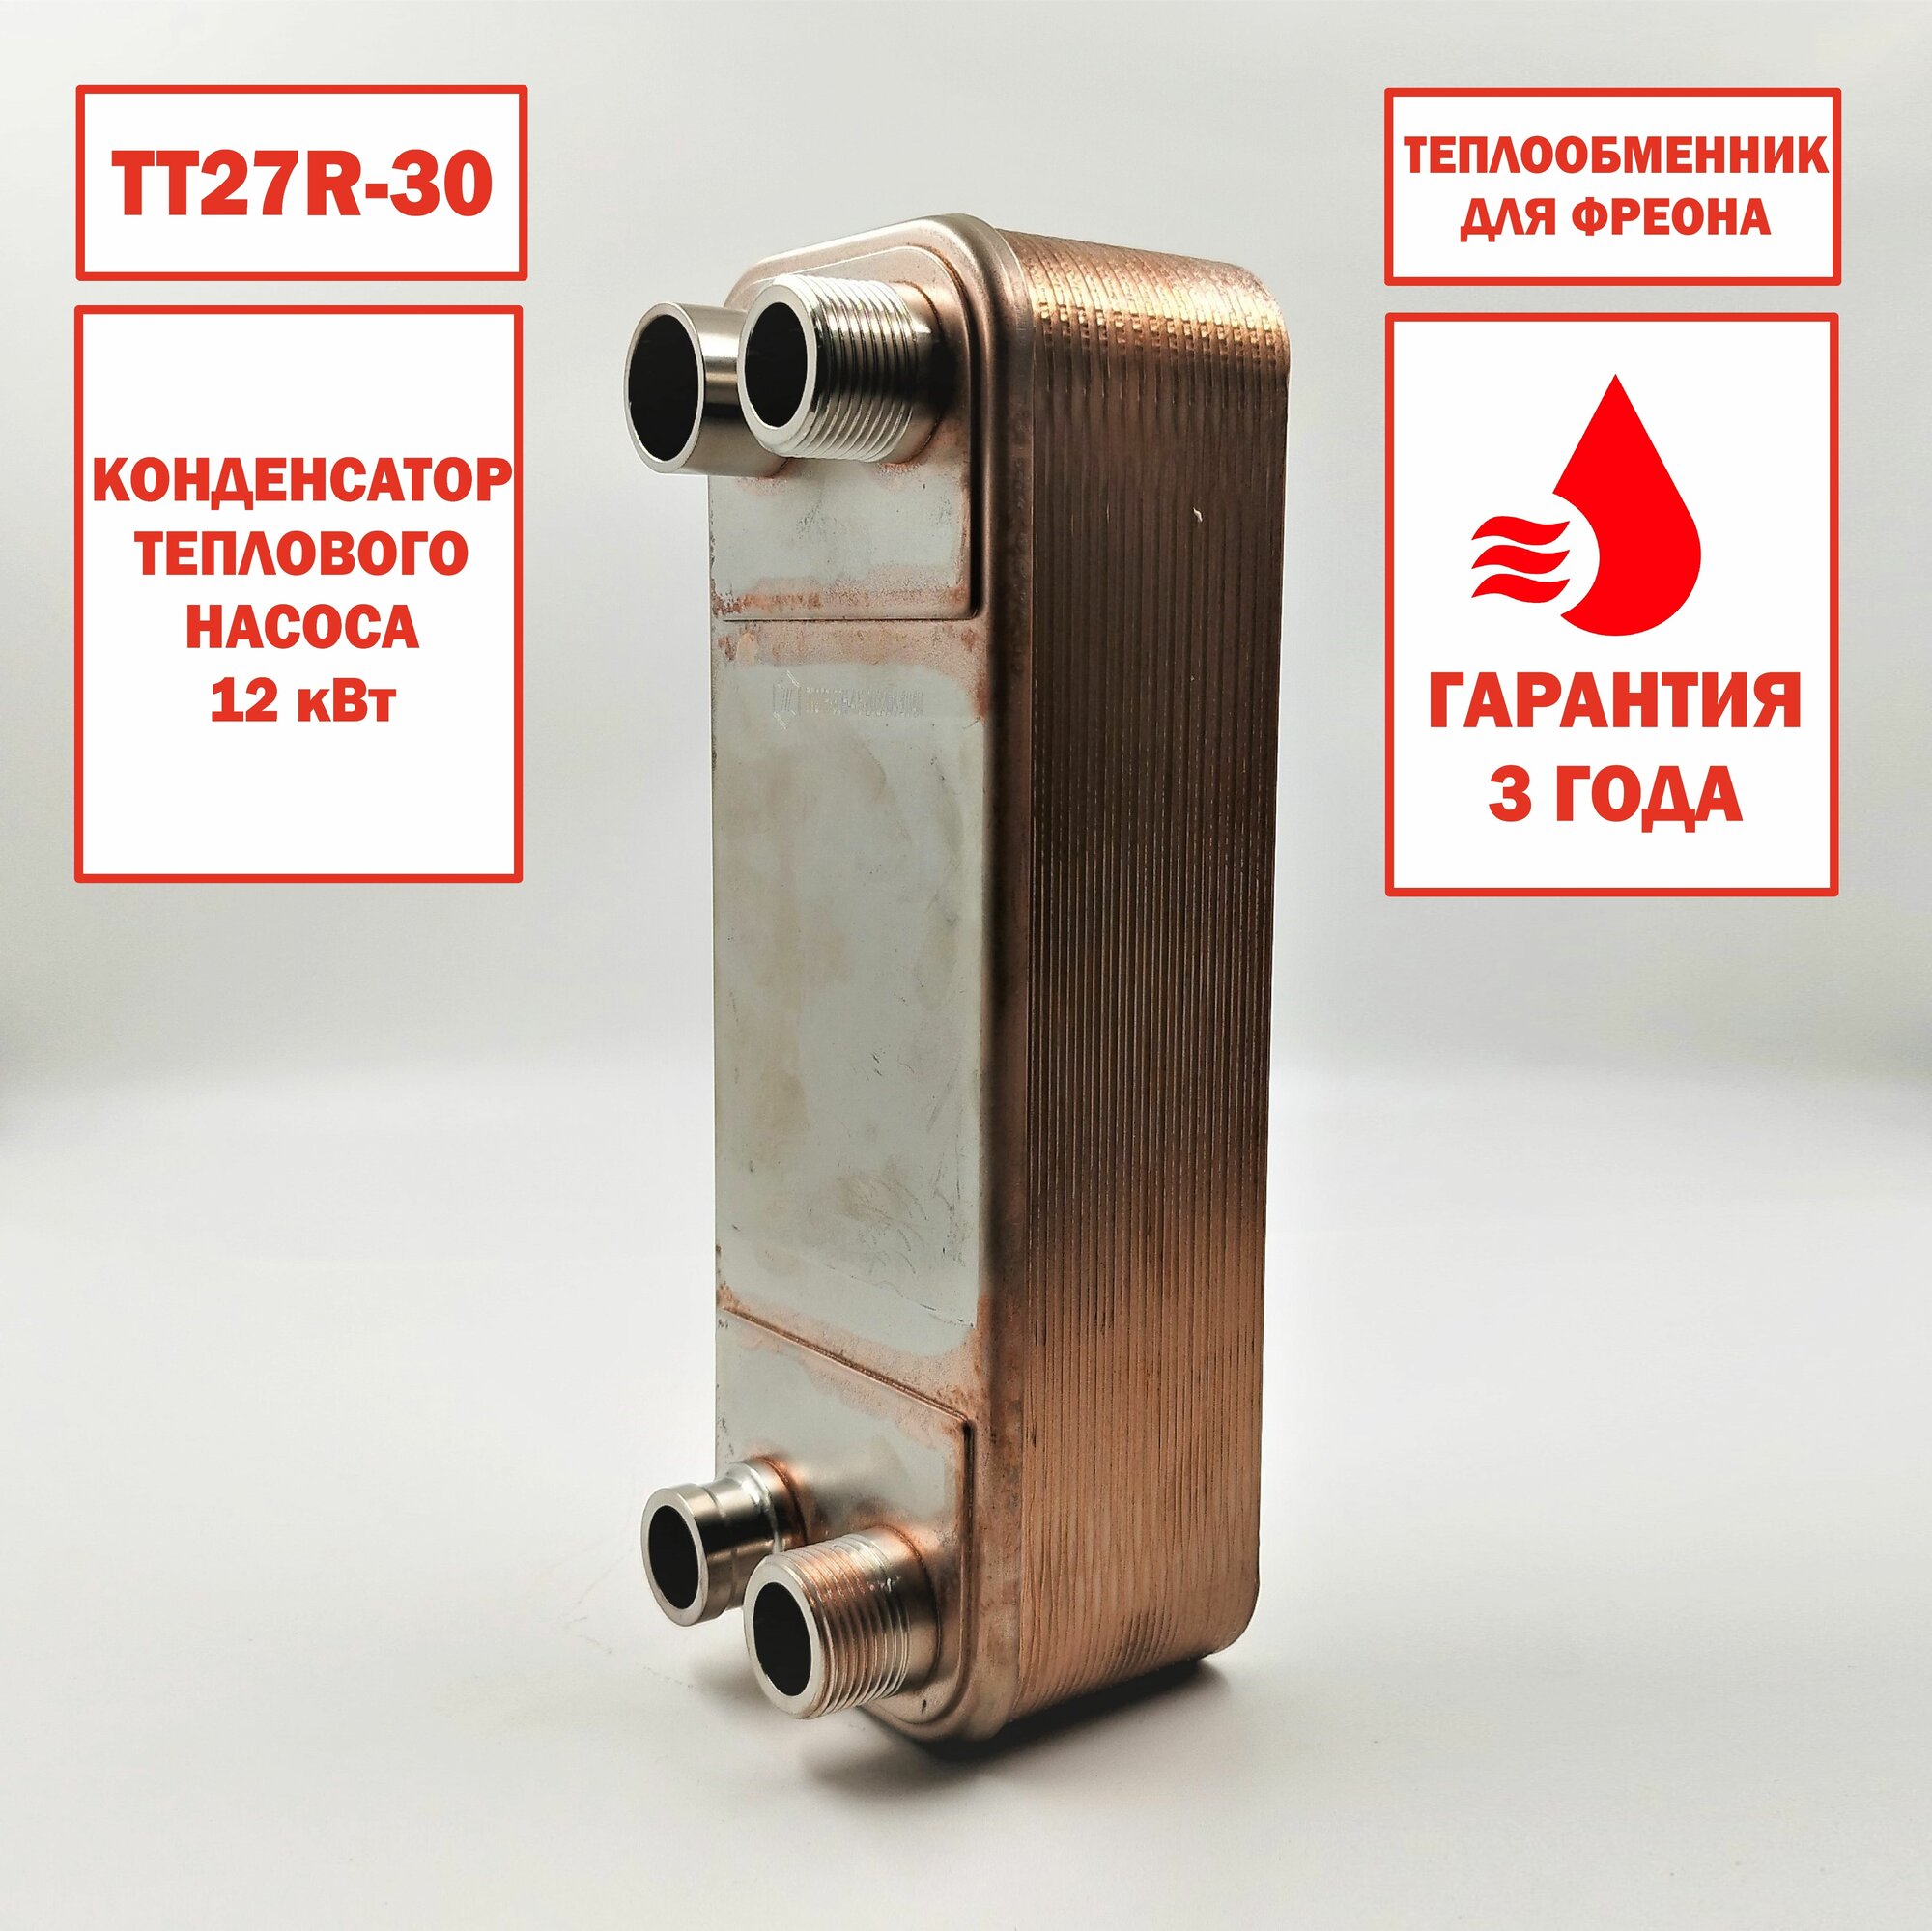 Паяный Теплообменник ТТ27R-30 (фреоновый, конденсатор для тепловых насосов), мощность 12 кВт.